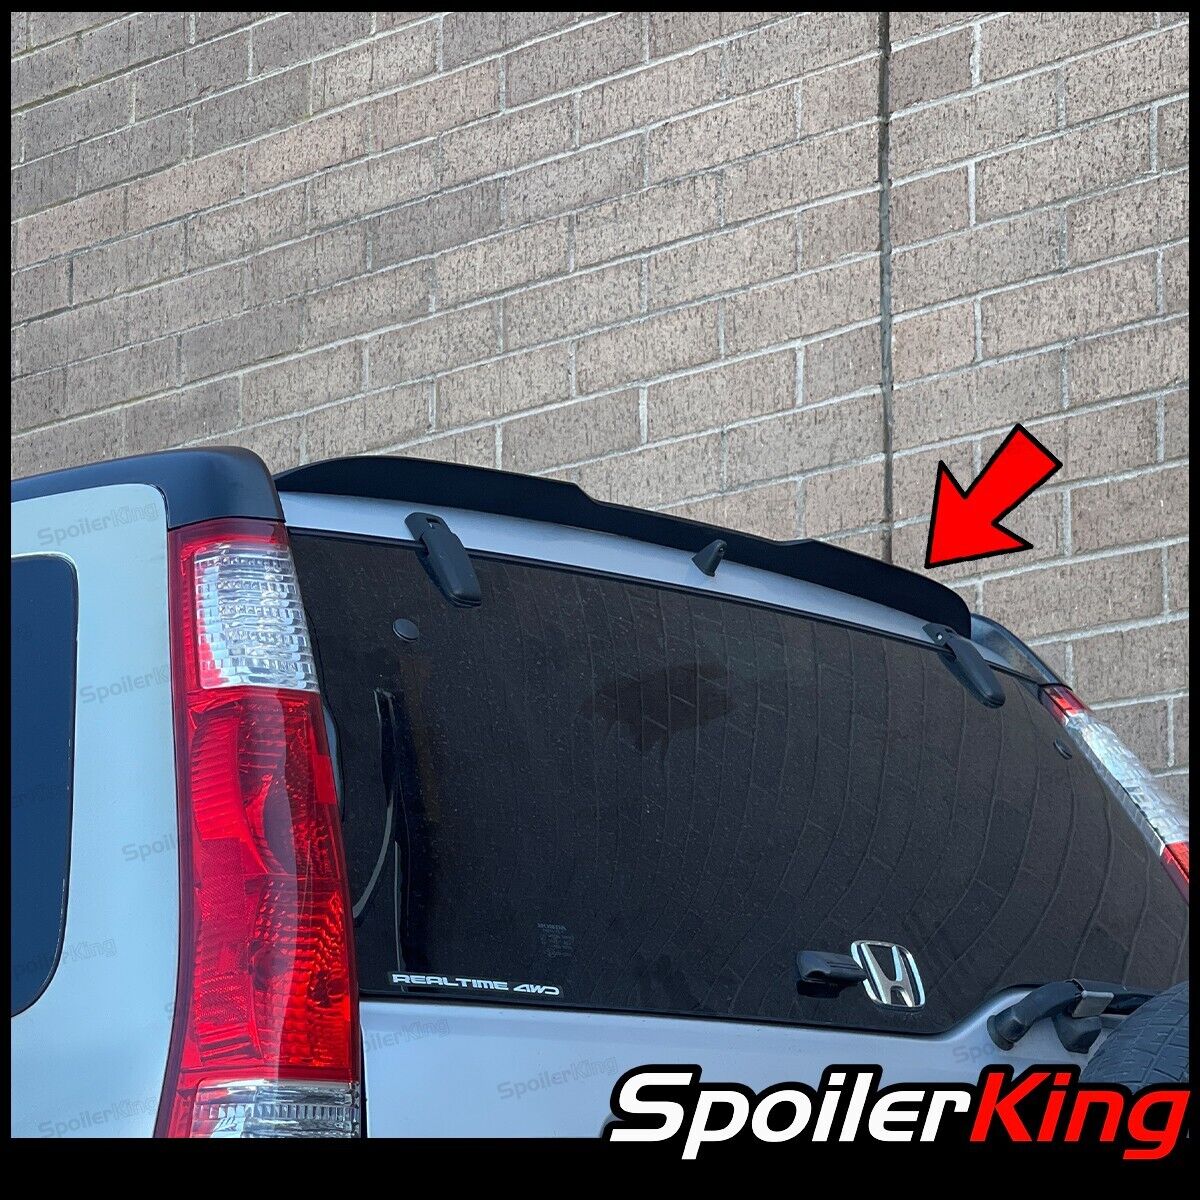 SpoilerKing Add-on Rear Roof Spoiler (Fits: Honda CRV 2002-2006) 284GC